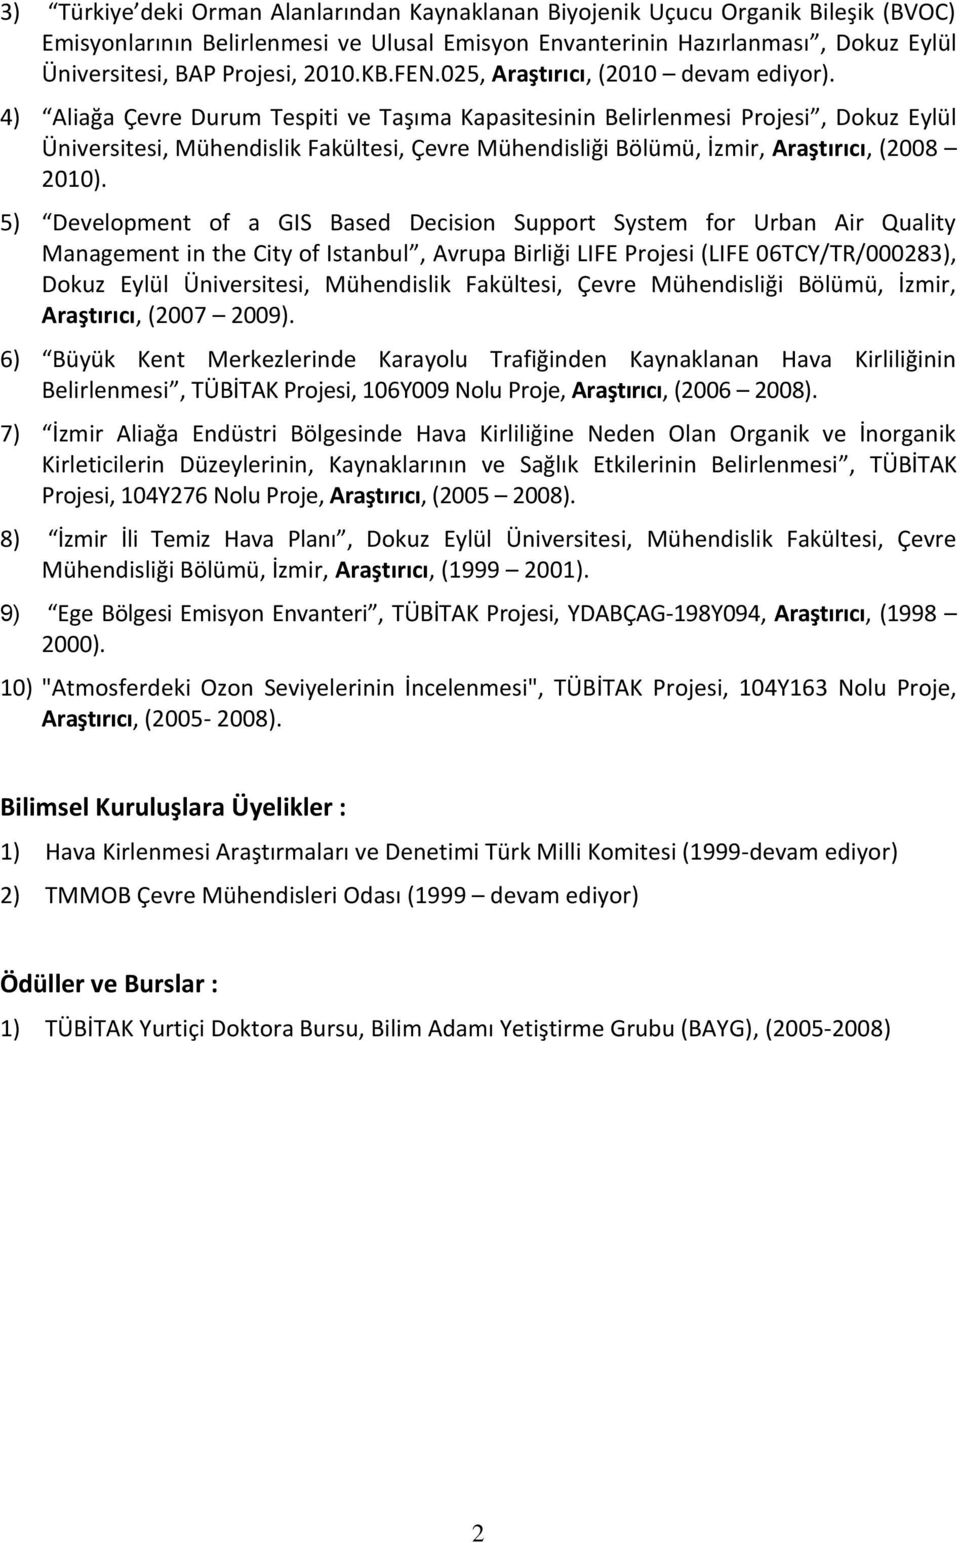 4) Aliağa Çevre Durum Tespiti ve Taşıma Kapasitesinin Belirlenmesi Projesi, Dokuz Eylül Üniversitesi, Mühendislik Fakültesi, Çevre Mühendisliği Bölümü, İzmir, Araştırıcı, (2008 2010).